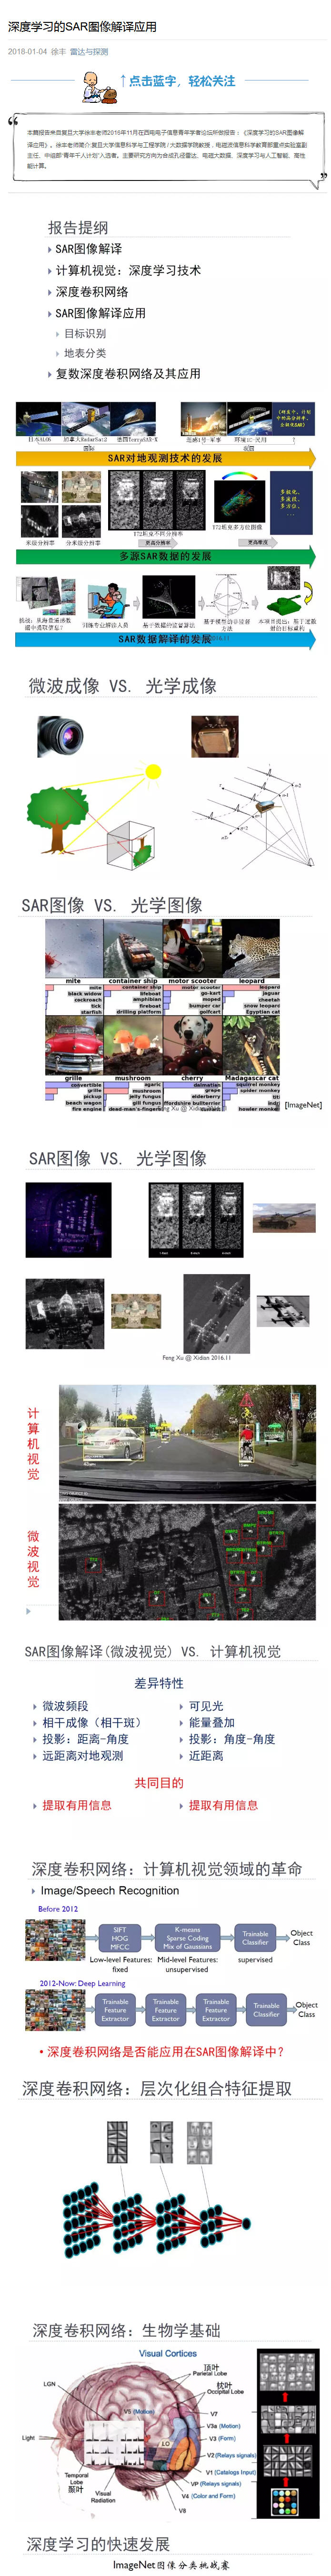 深度学习的SAR图像解译应用01.jpg